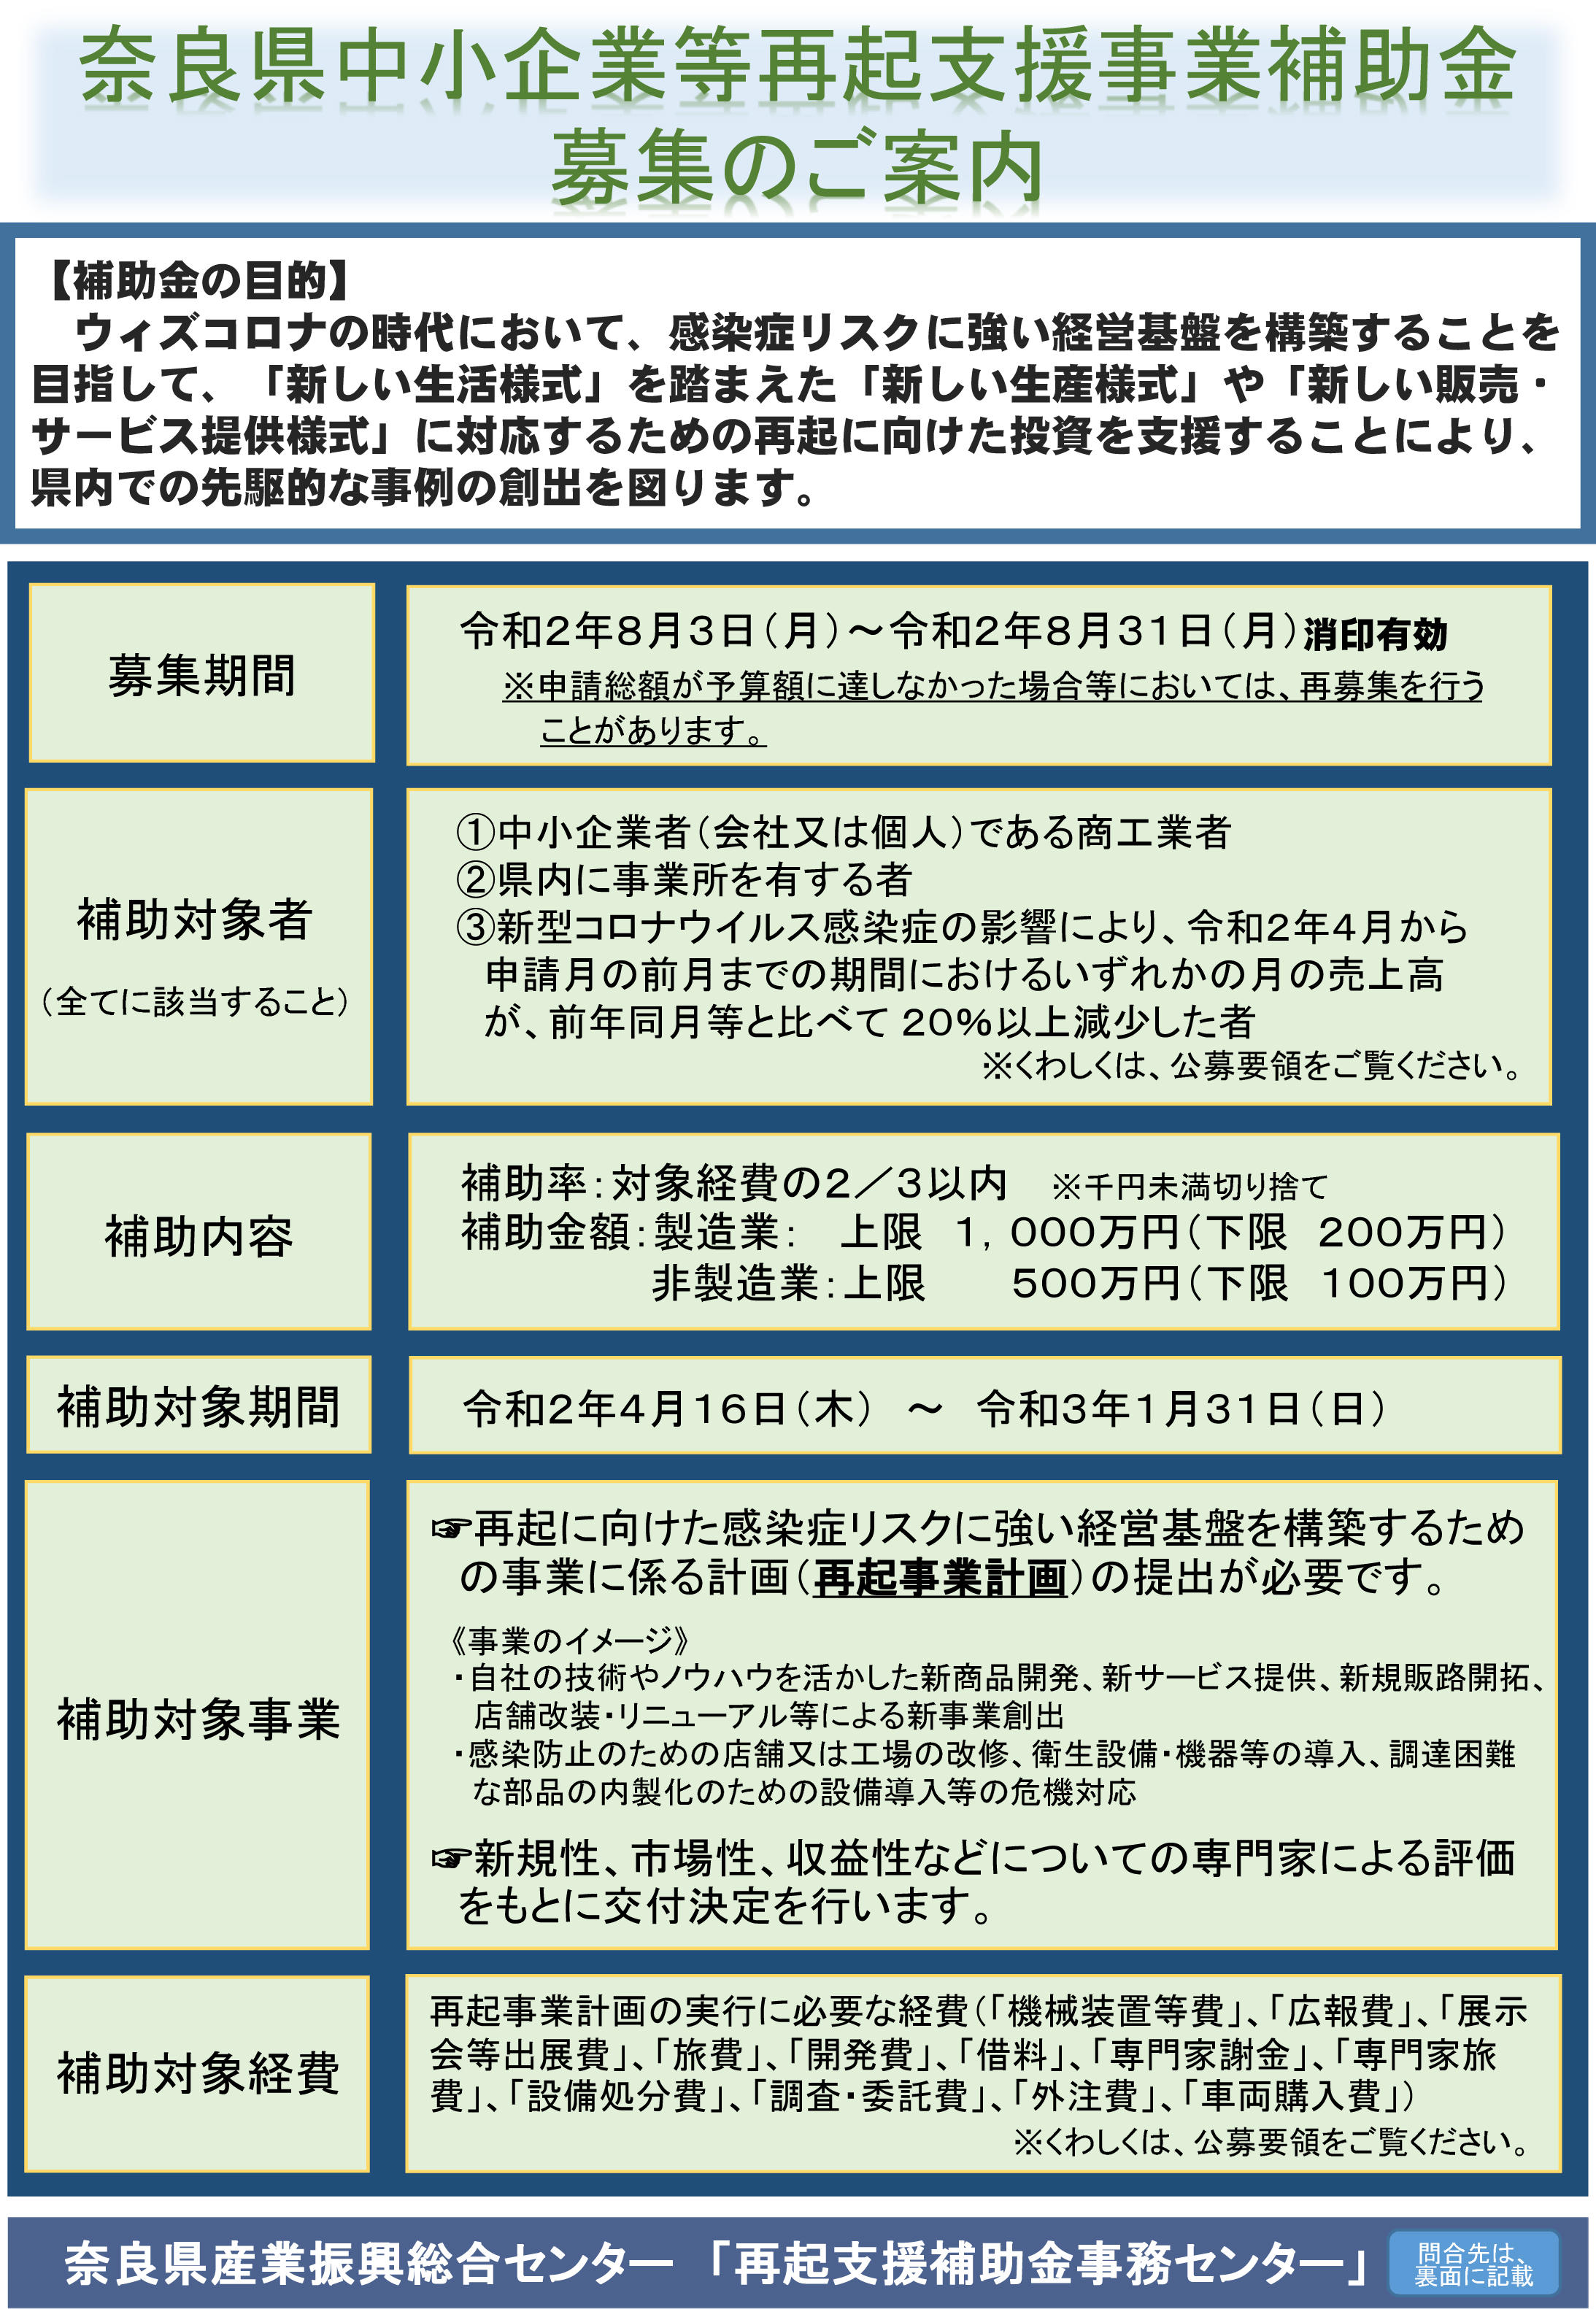 お知らせ 奈良県からのコロナ禍関連補助金のお知らせ 奈良県繊維工業協同組合連合会